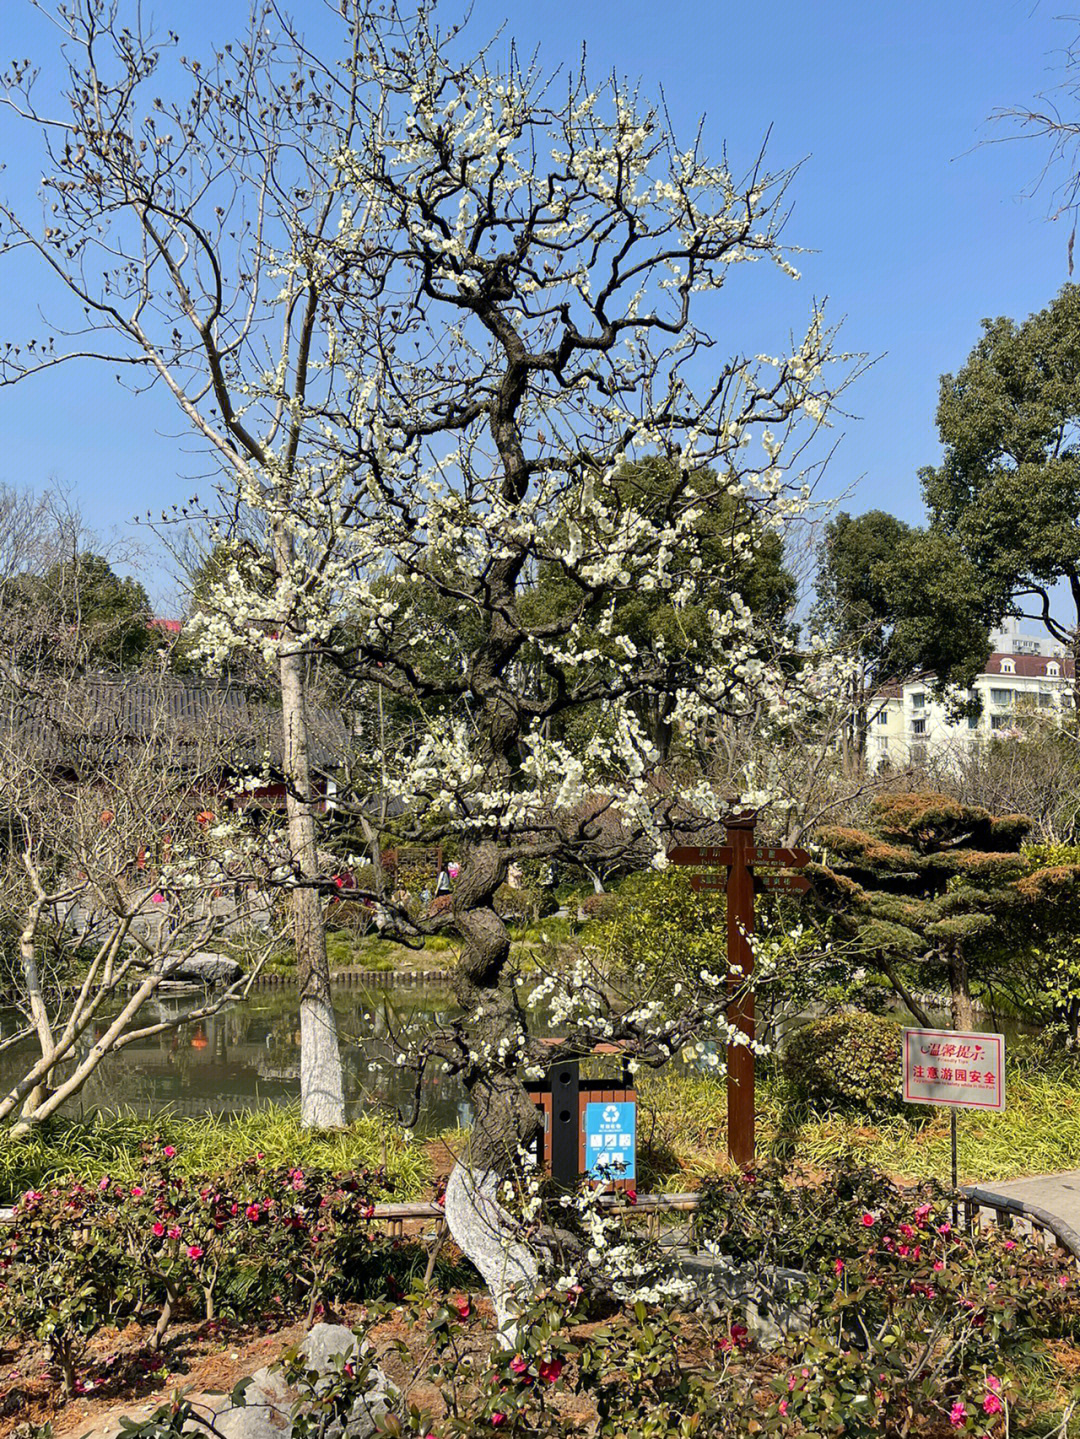 莘庄公园始于上世纪三十年代的杨家花园,后经多次扩建公园以梅花著名